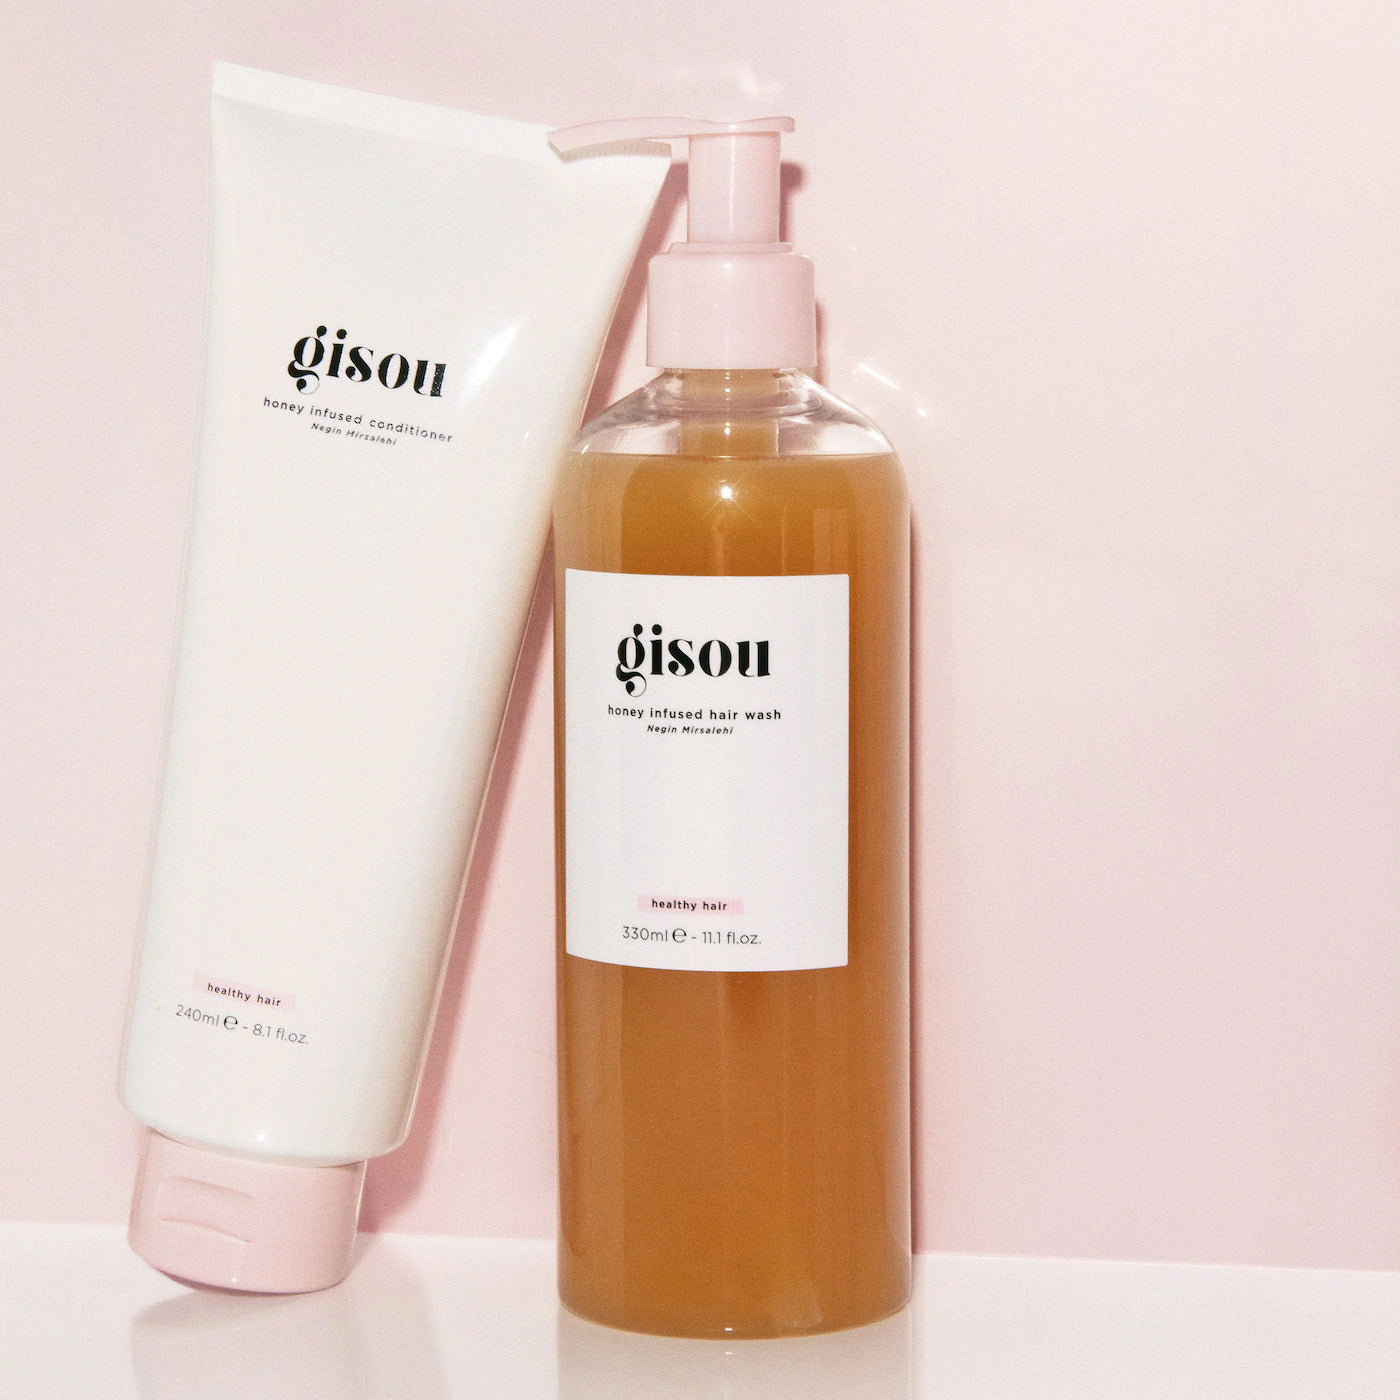 Gisou - Honey Infused Hair Wash Shampoo